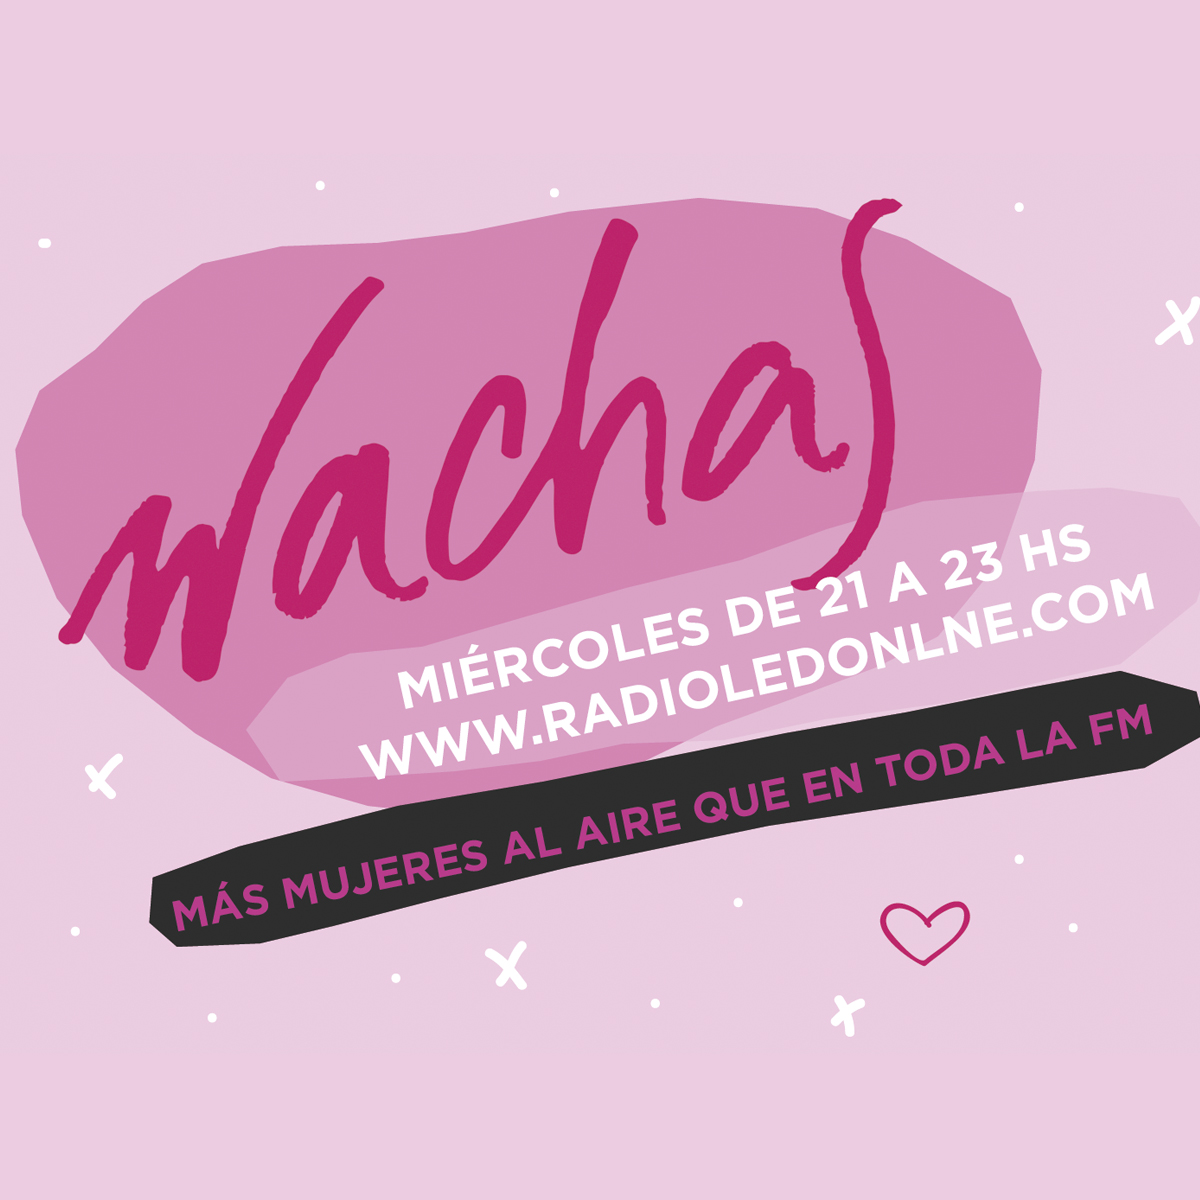 #Podcast Wachas 28.06: @VicuVillanueva, Diego Watkins @ATTTA_Nacional #DiaDelOrgullo y más!